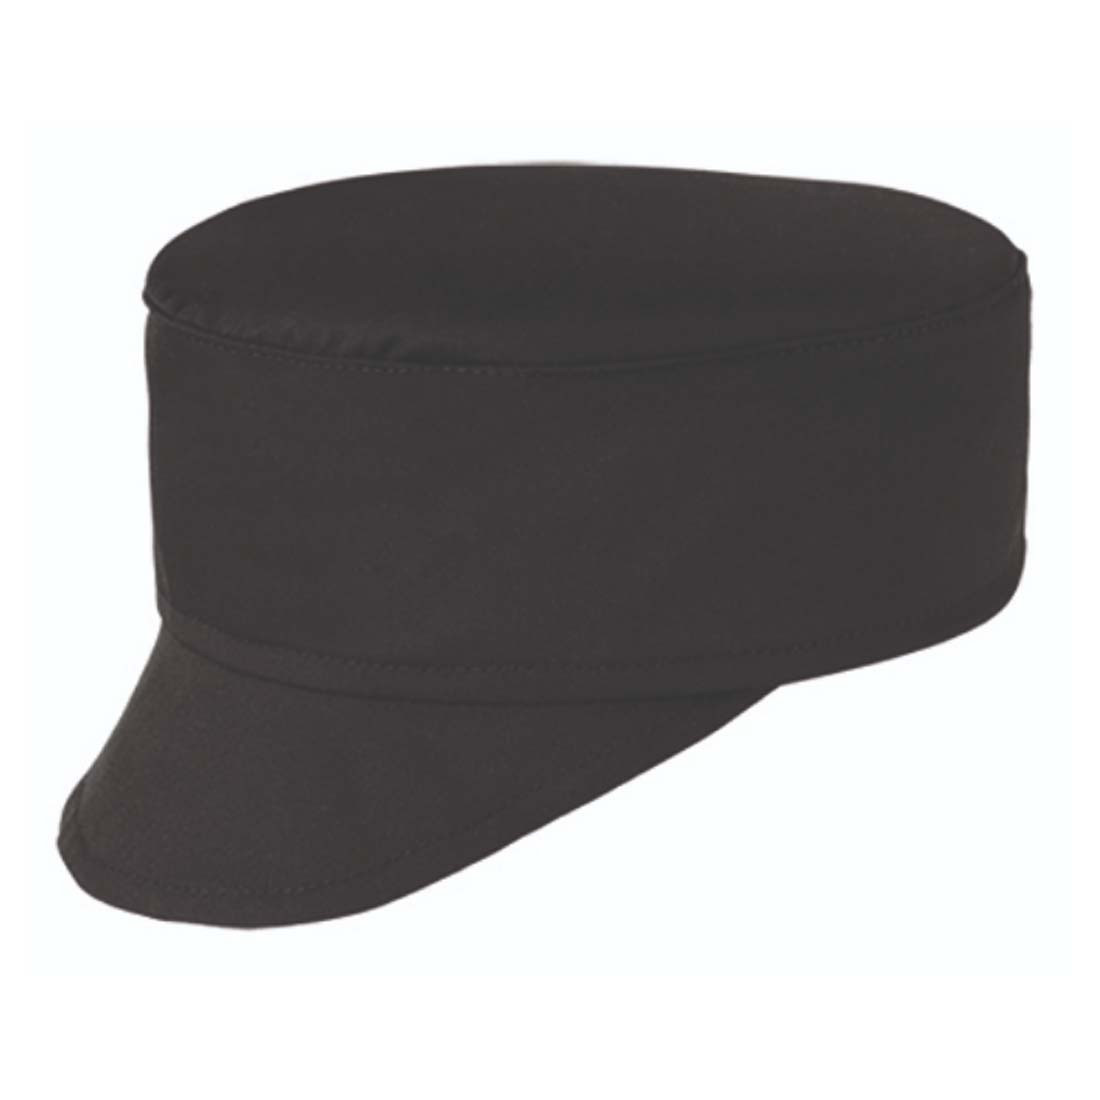 Chef's hat - Safetywear